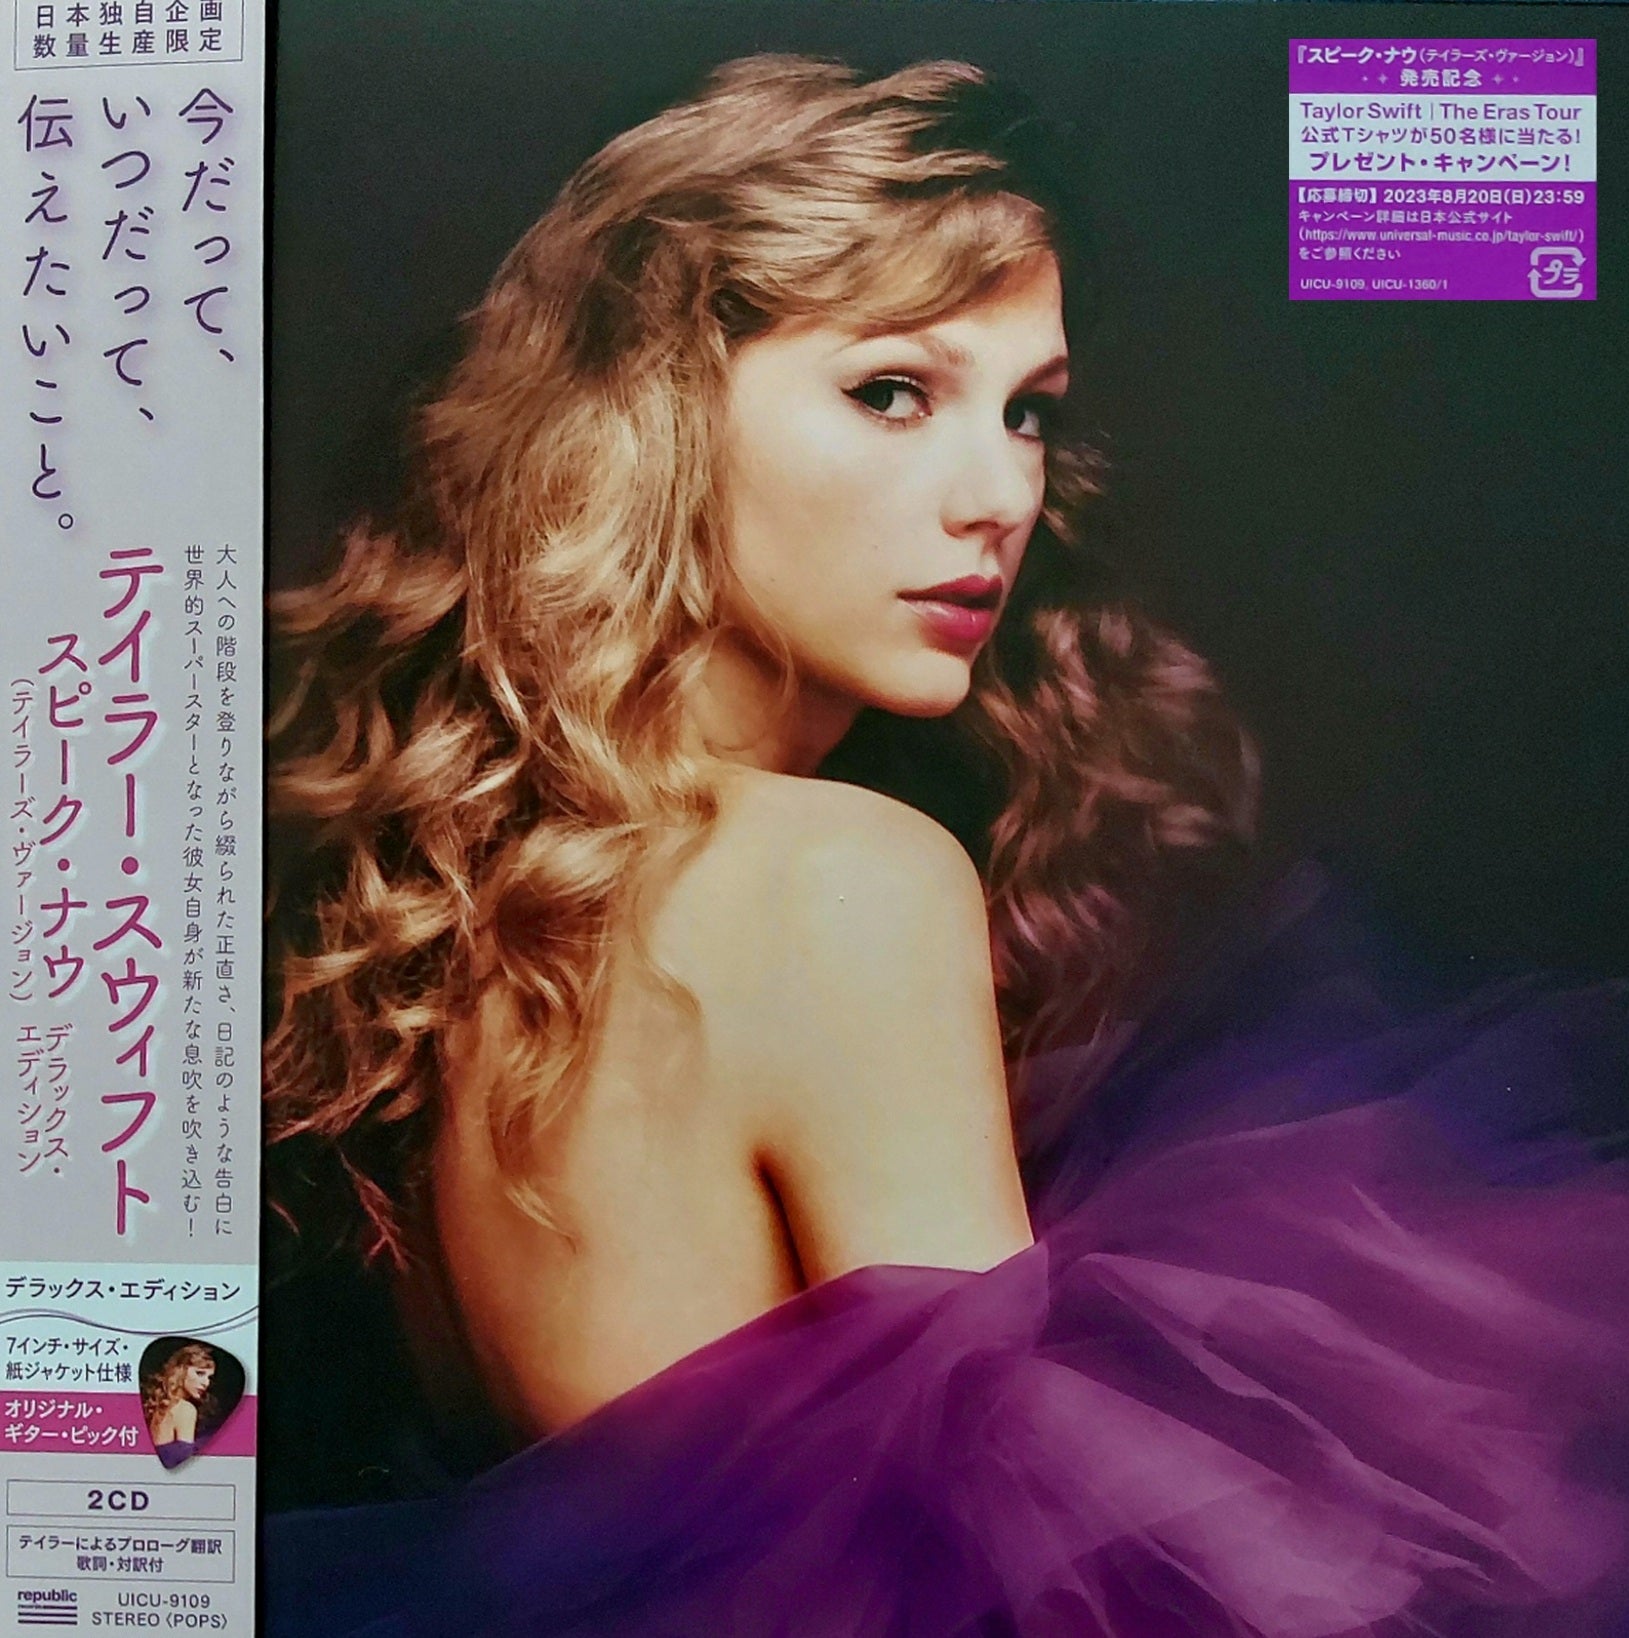 Taylor Swift: Speak Now - Deluxe Japan 7